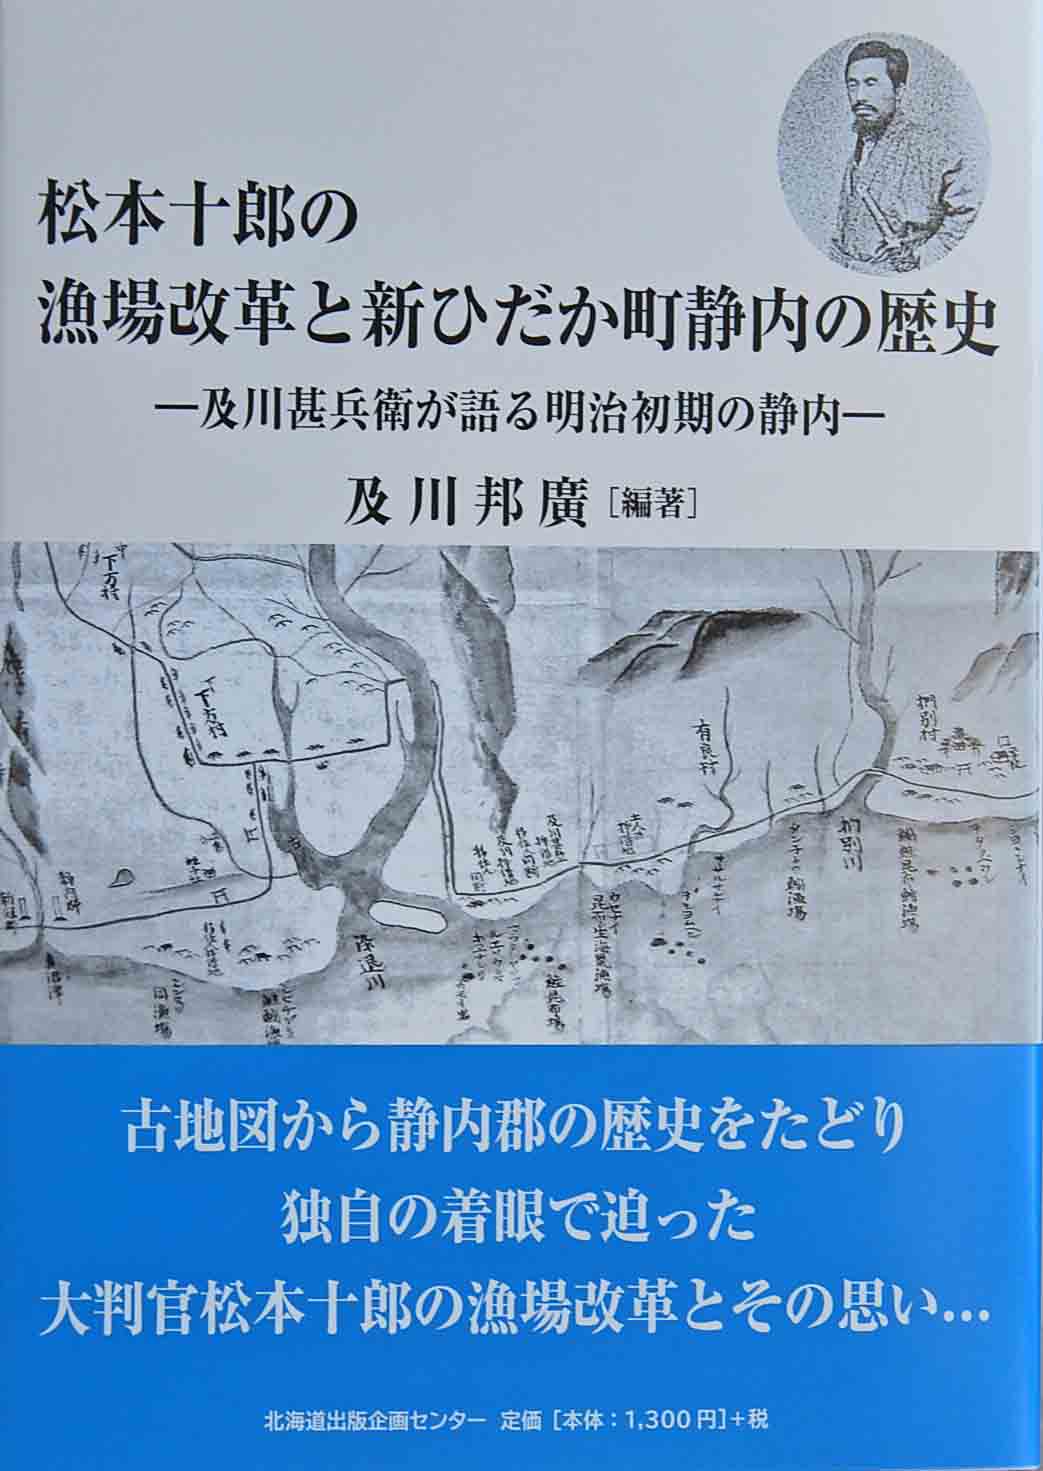 松本十郎の漁場改革と新ひだか町静内の歴史